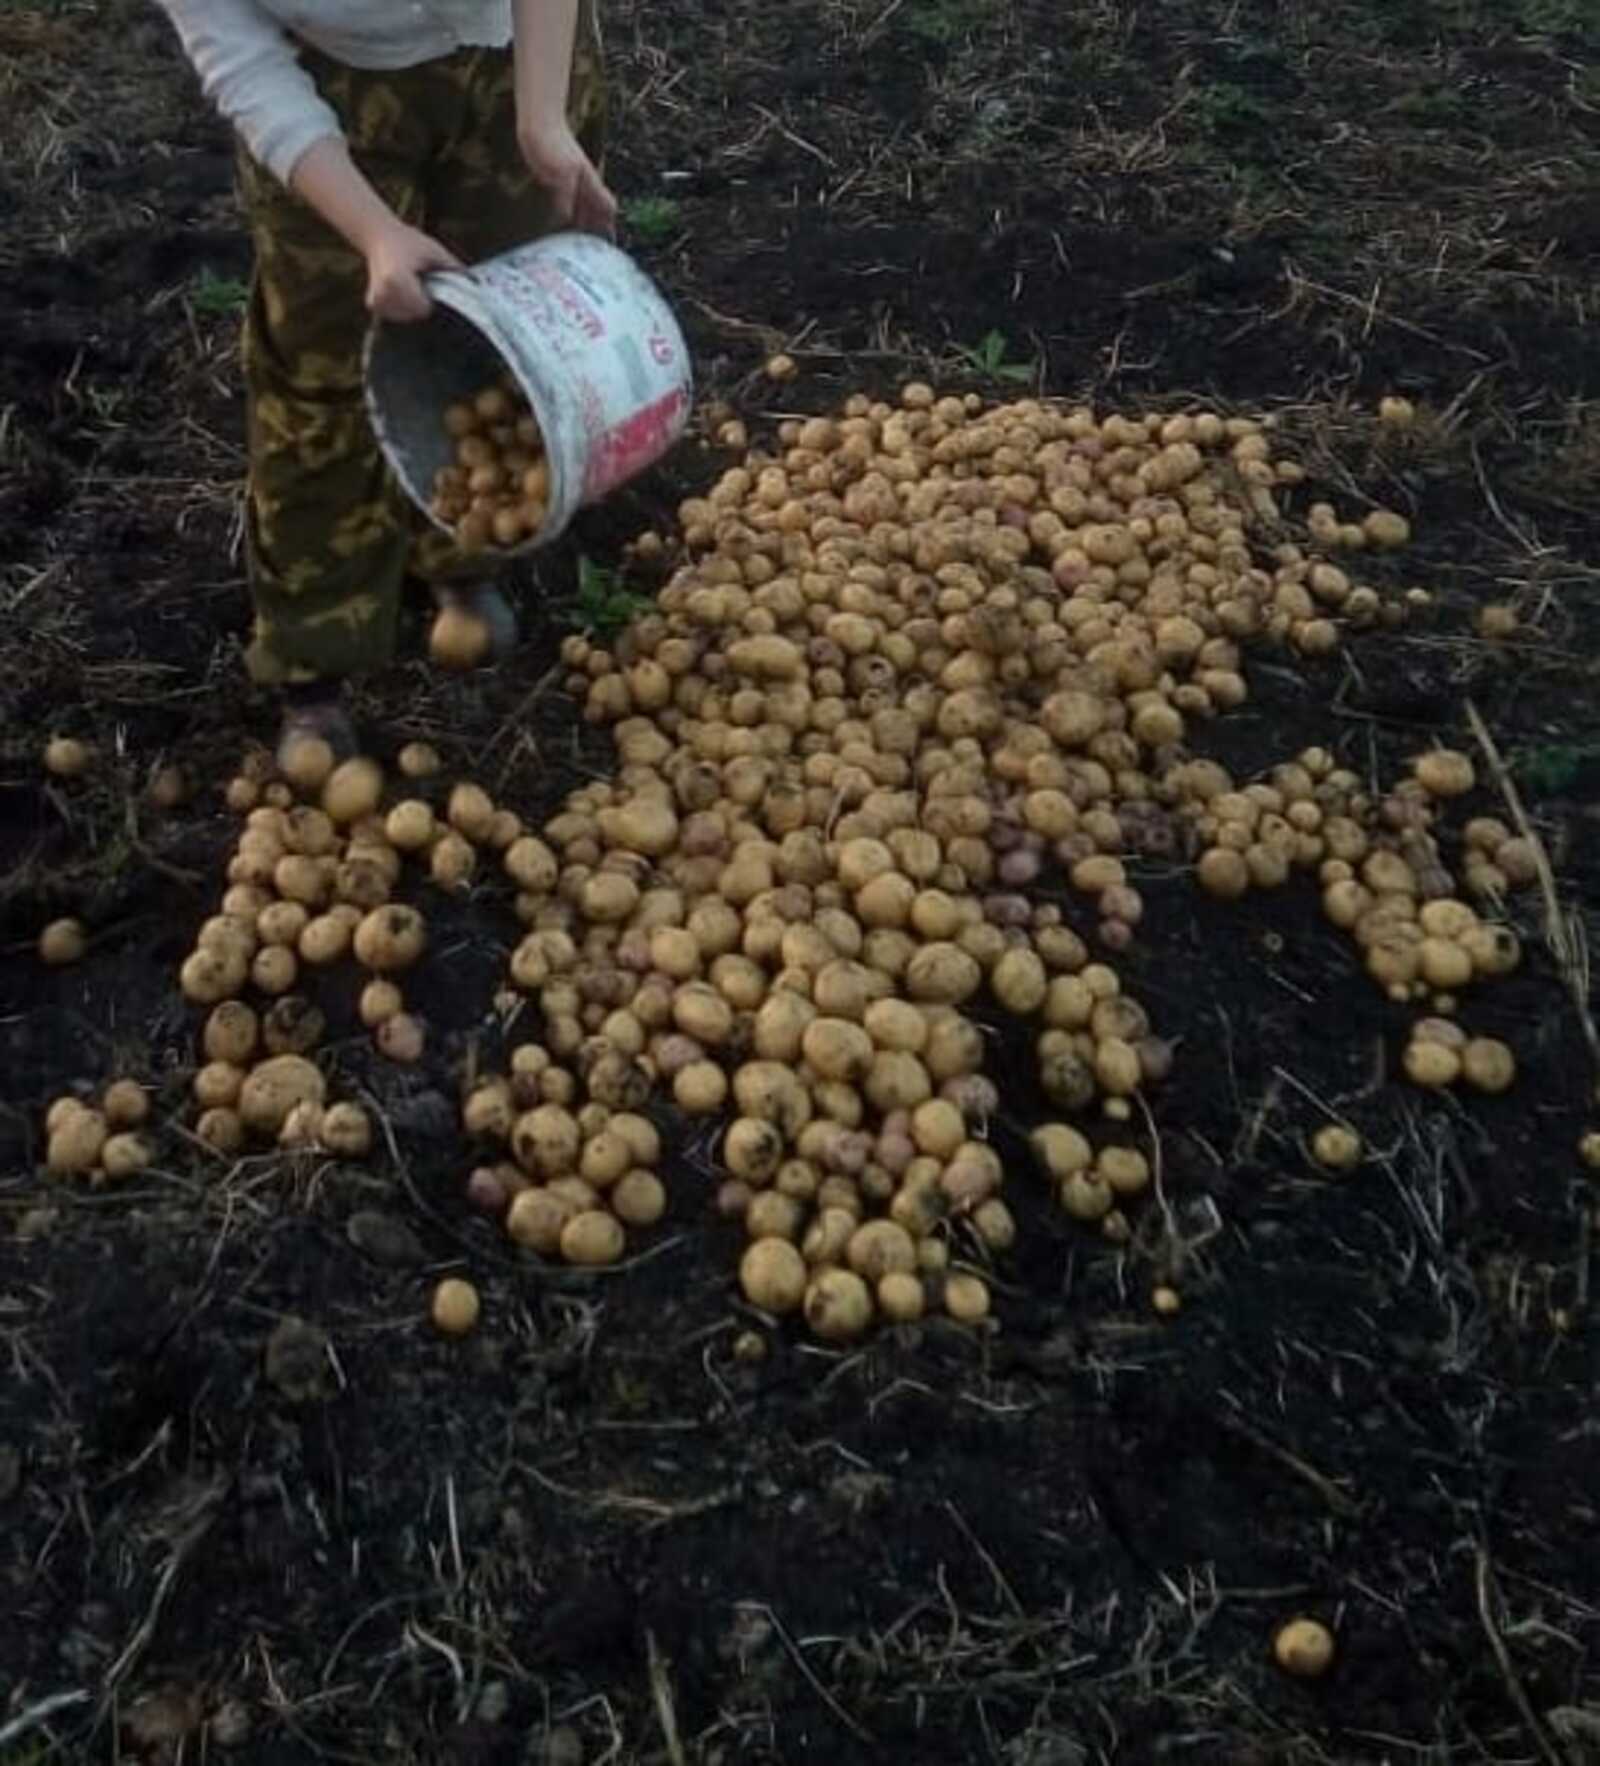 Сельхозпредприятие Башкортостана экспортировало в Казахстан 27 тонн картофеля